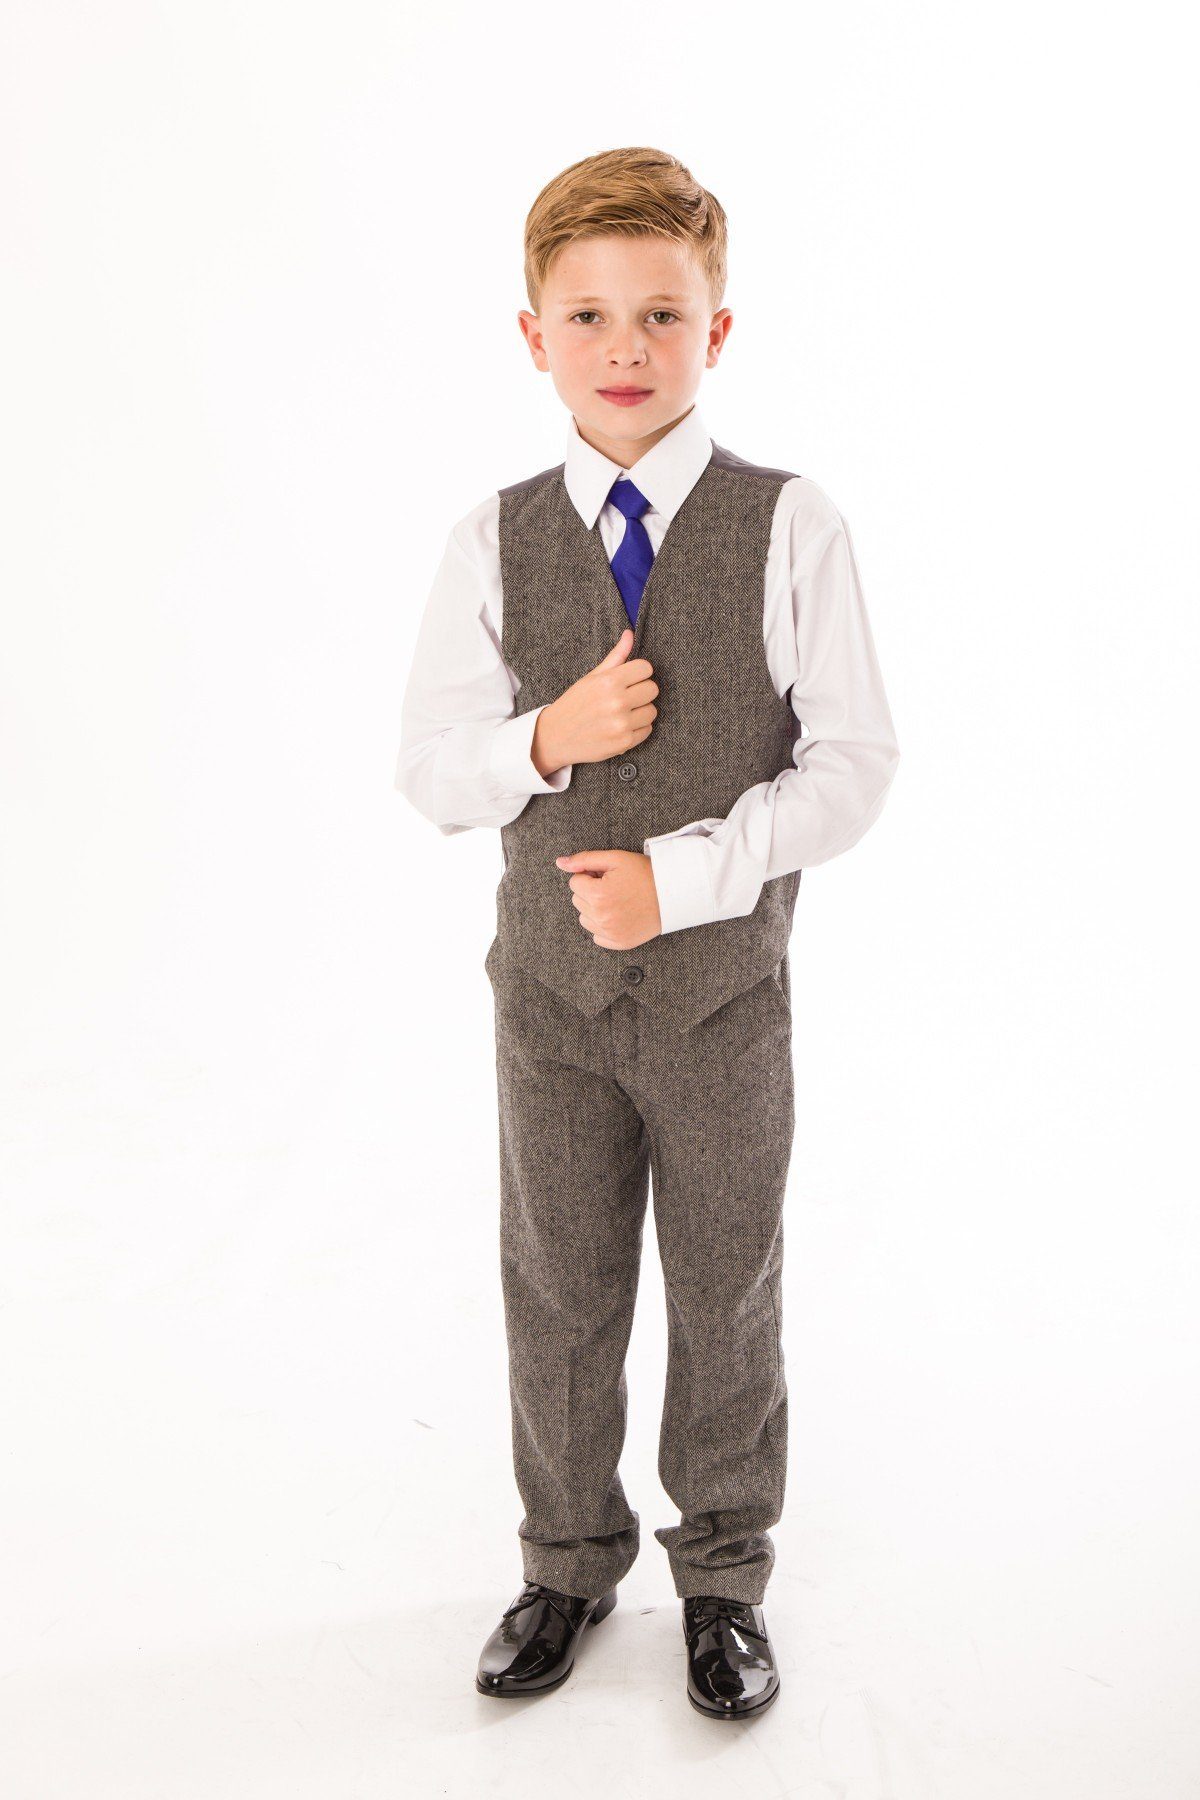 Melli-Trends Kinderanzug (Hemd, Hose und festlich, Krawatte) grau Festlicher Twid Weste, 4-teilig, elegant Jungen Anzug